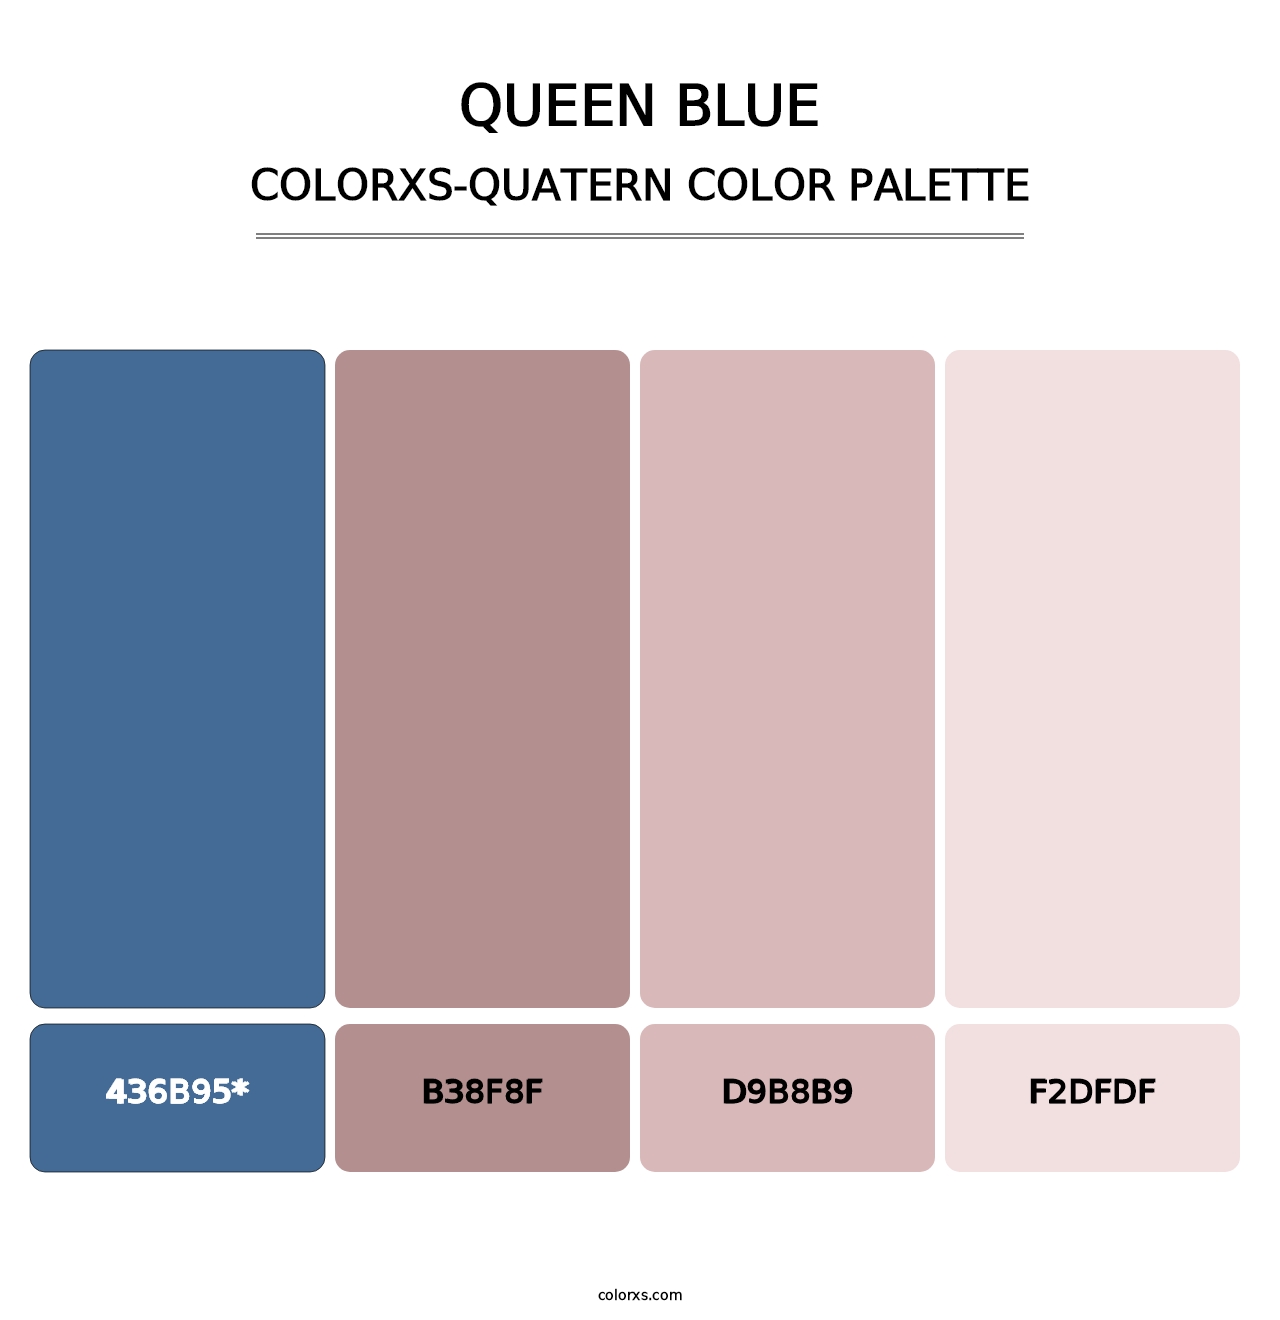 Queen Blue - Colorxs Quatern Palette